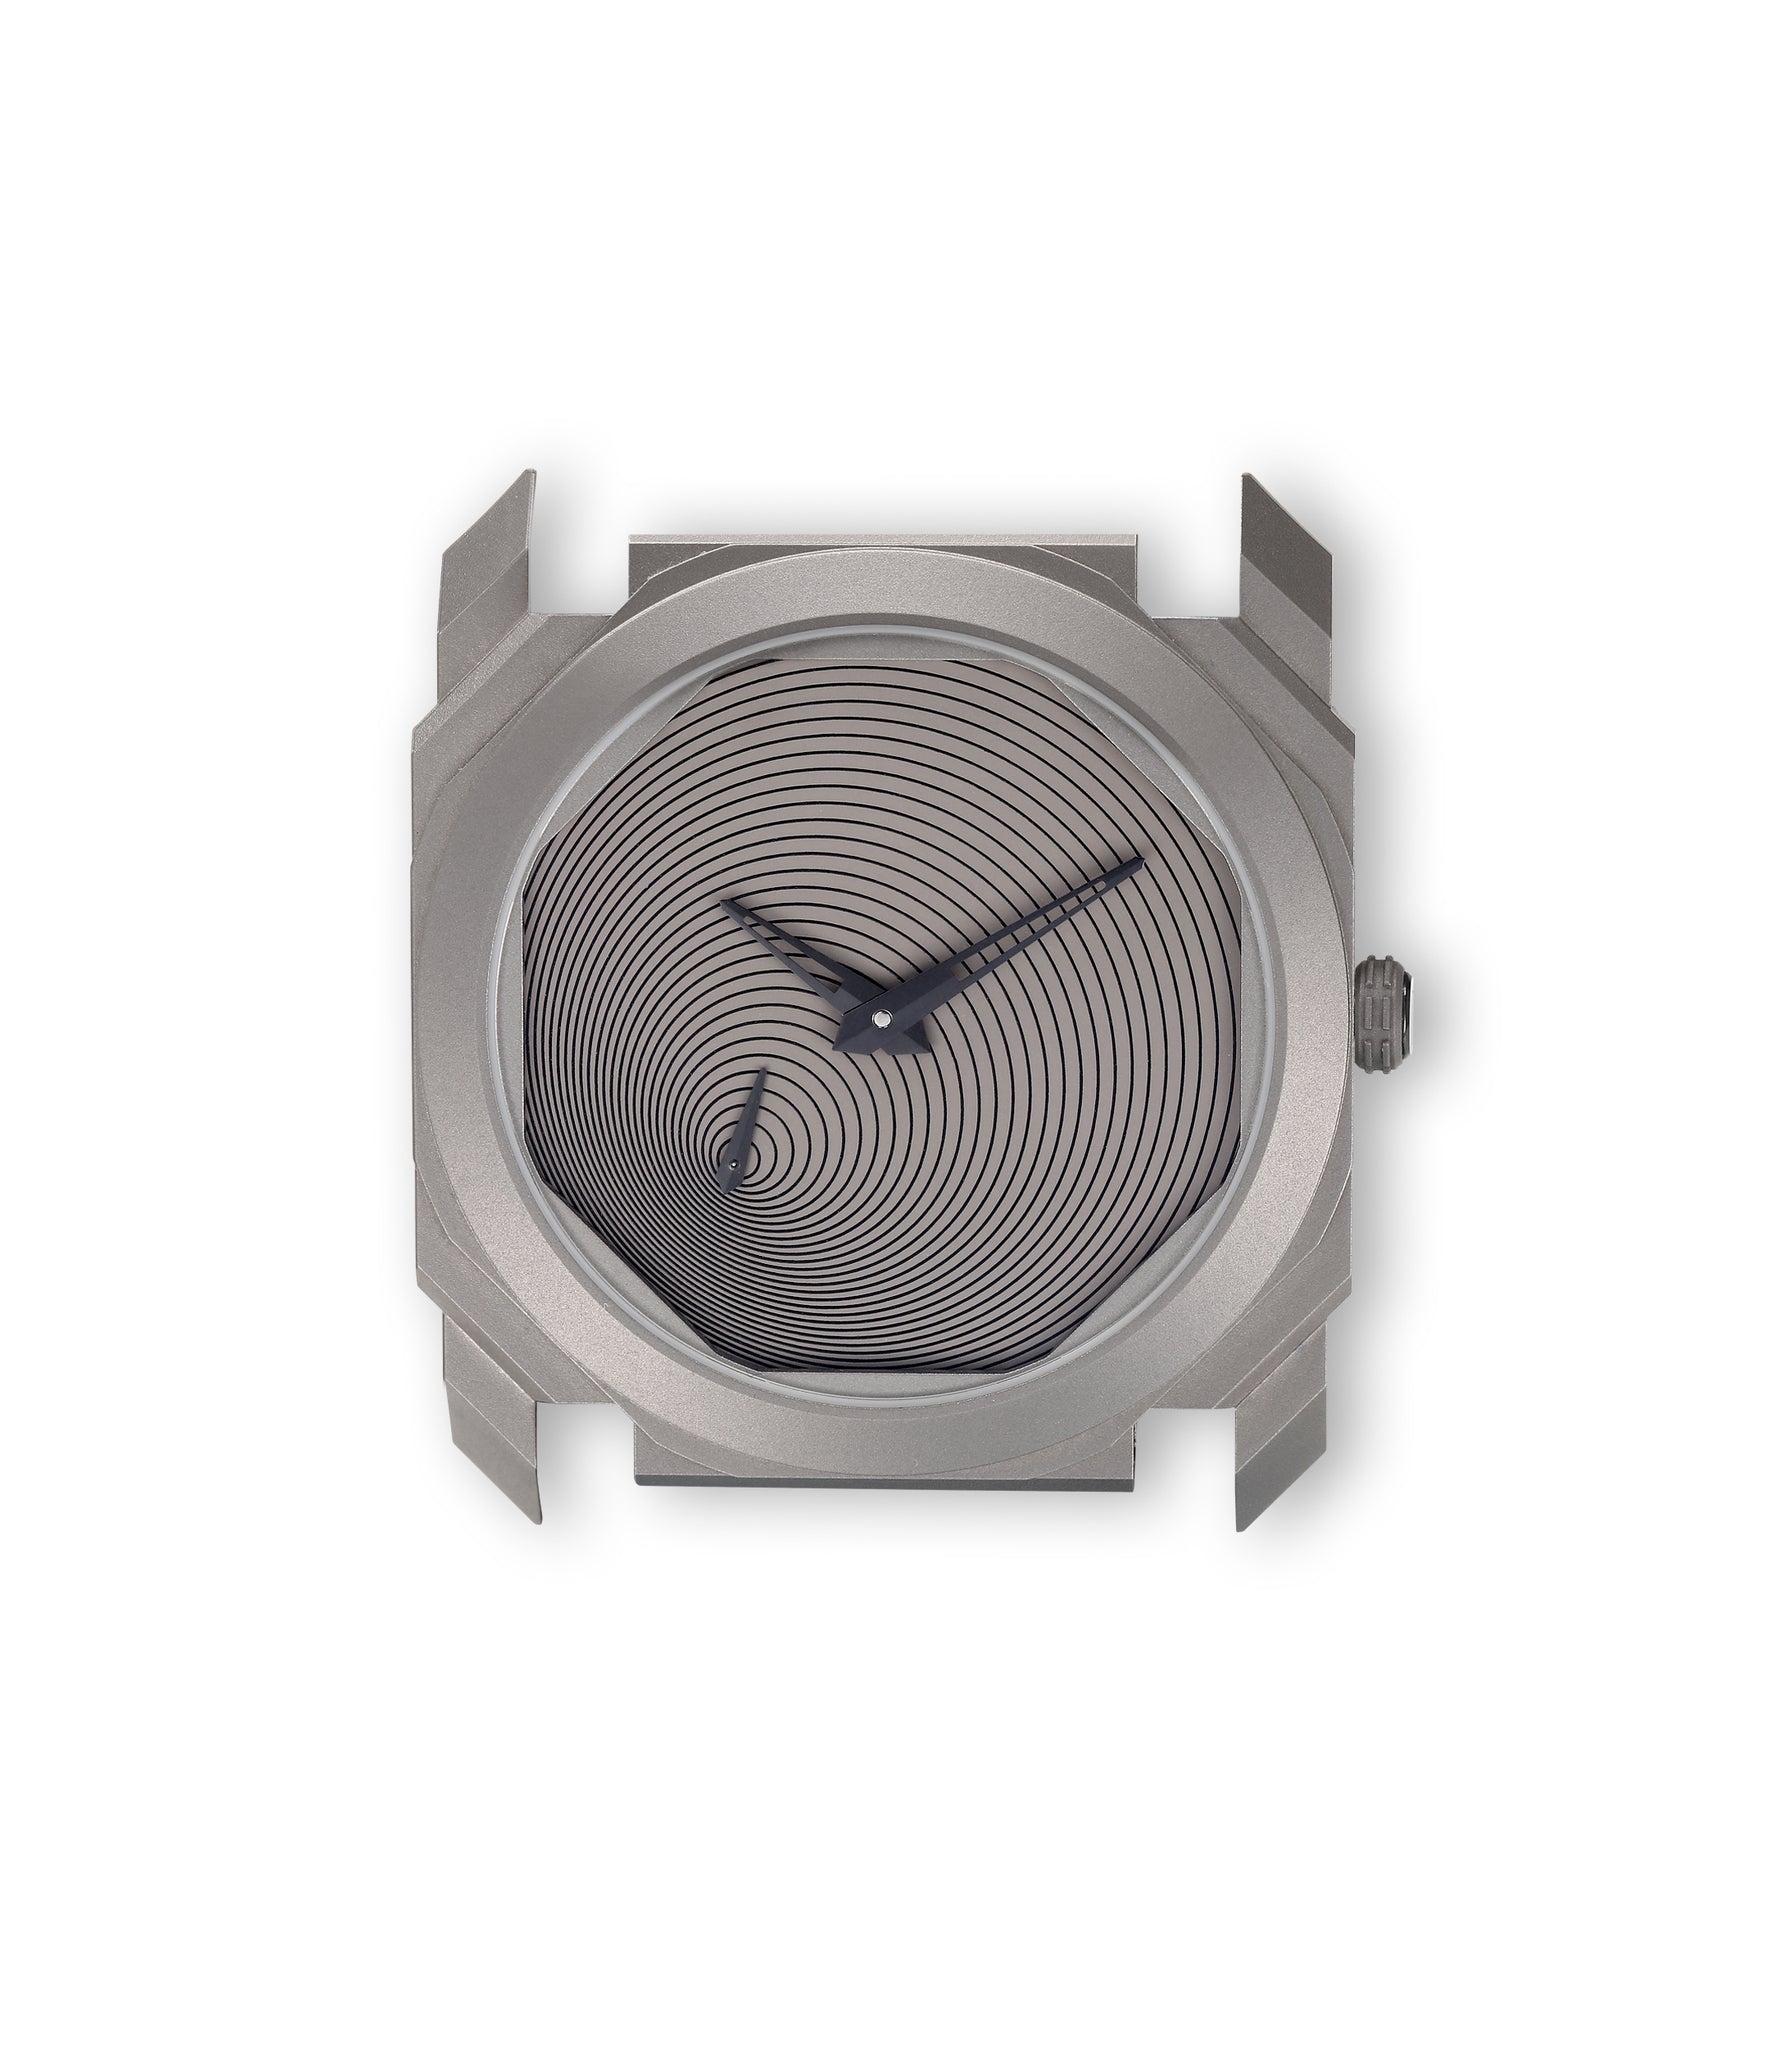 Octo Finissimo Automatic | “Tadao Ando” Limited Edition | Titanium